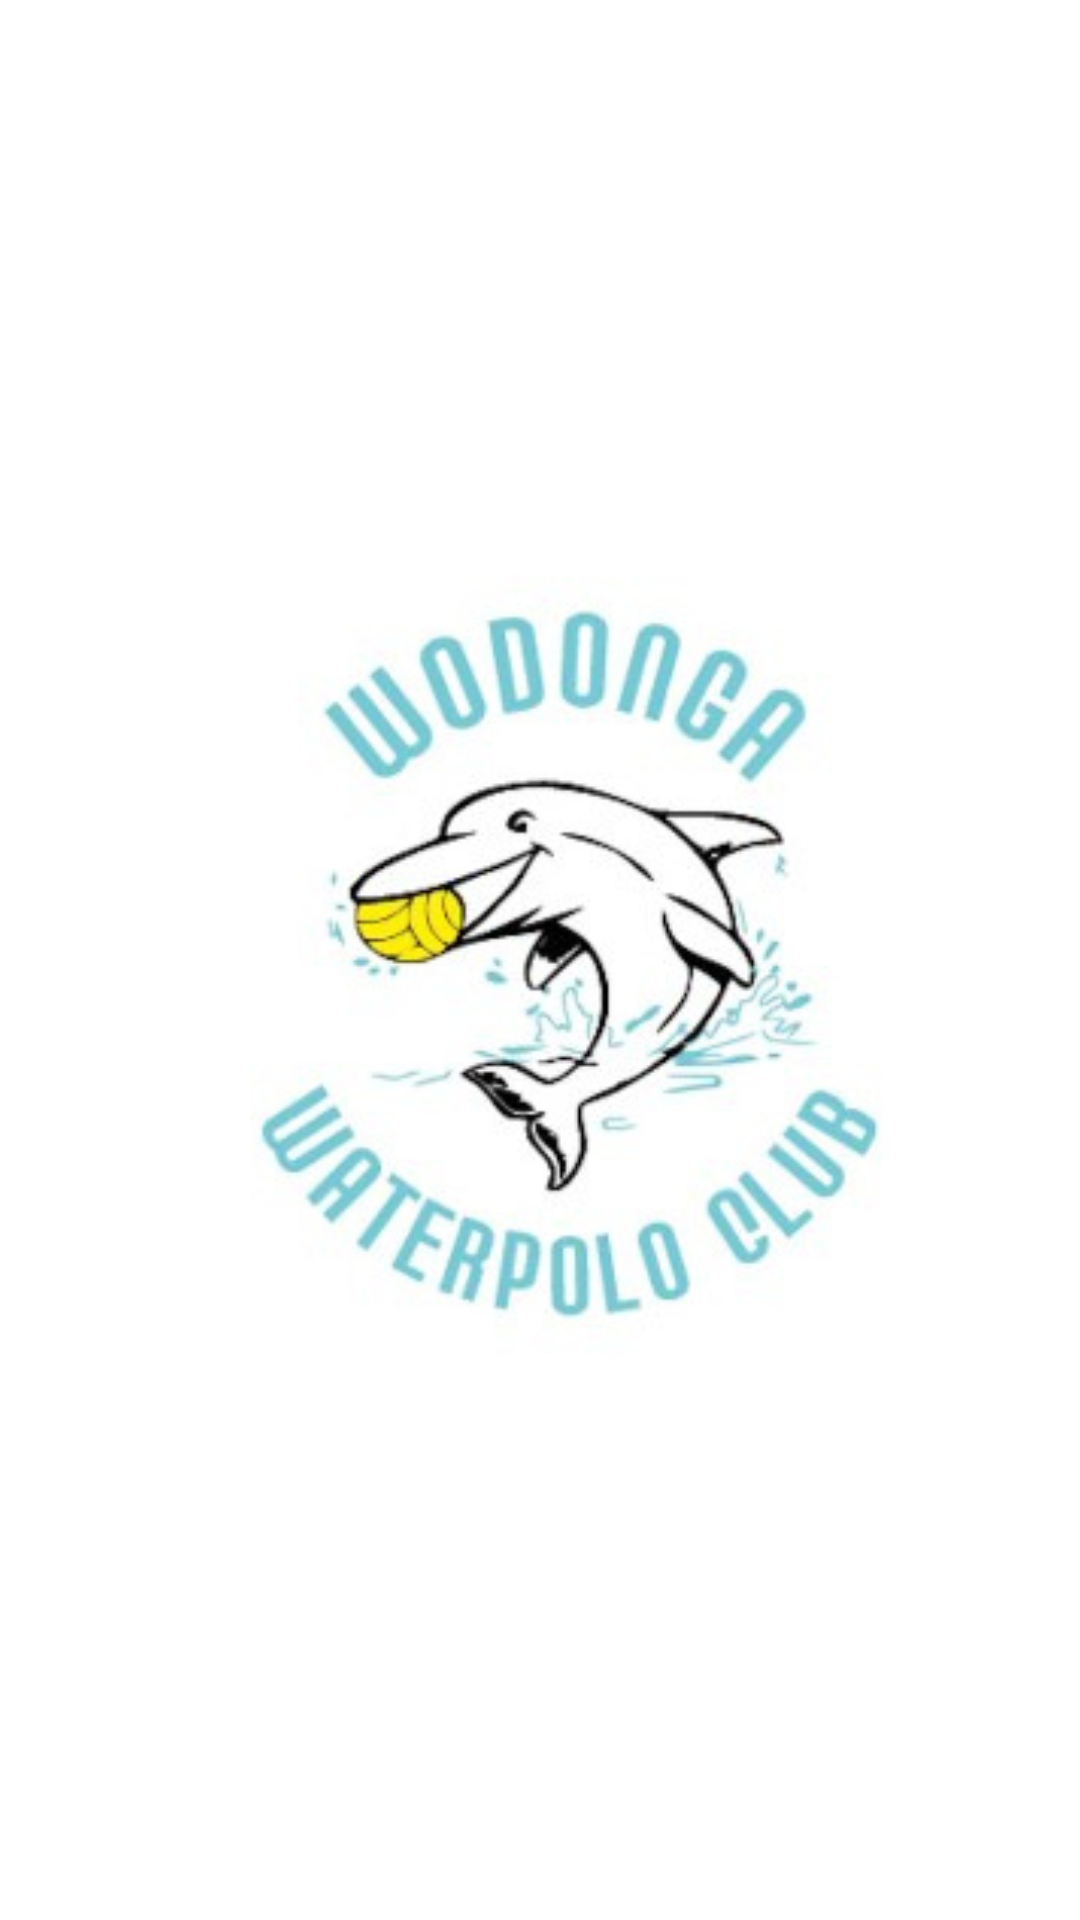 Wodonga Waterpolo Club